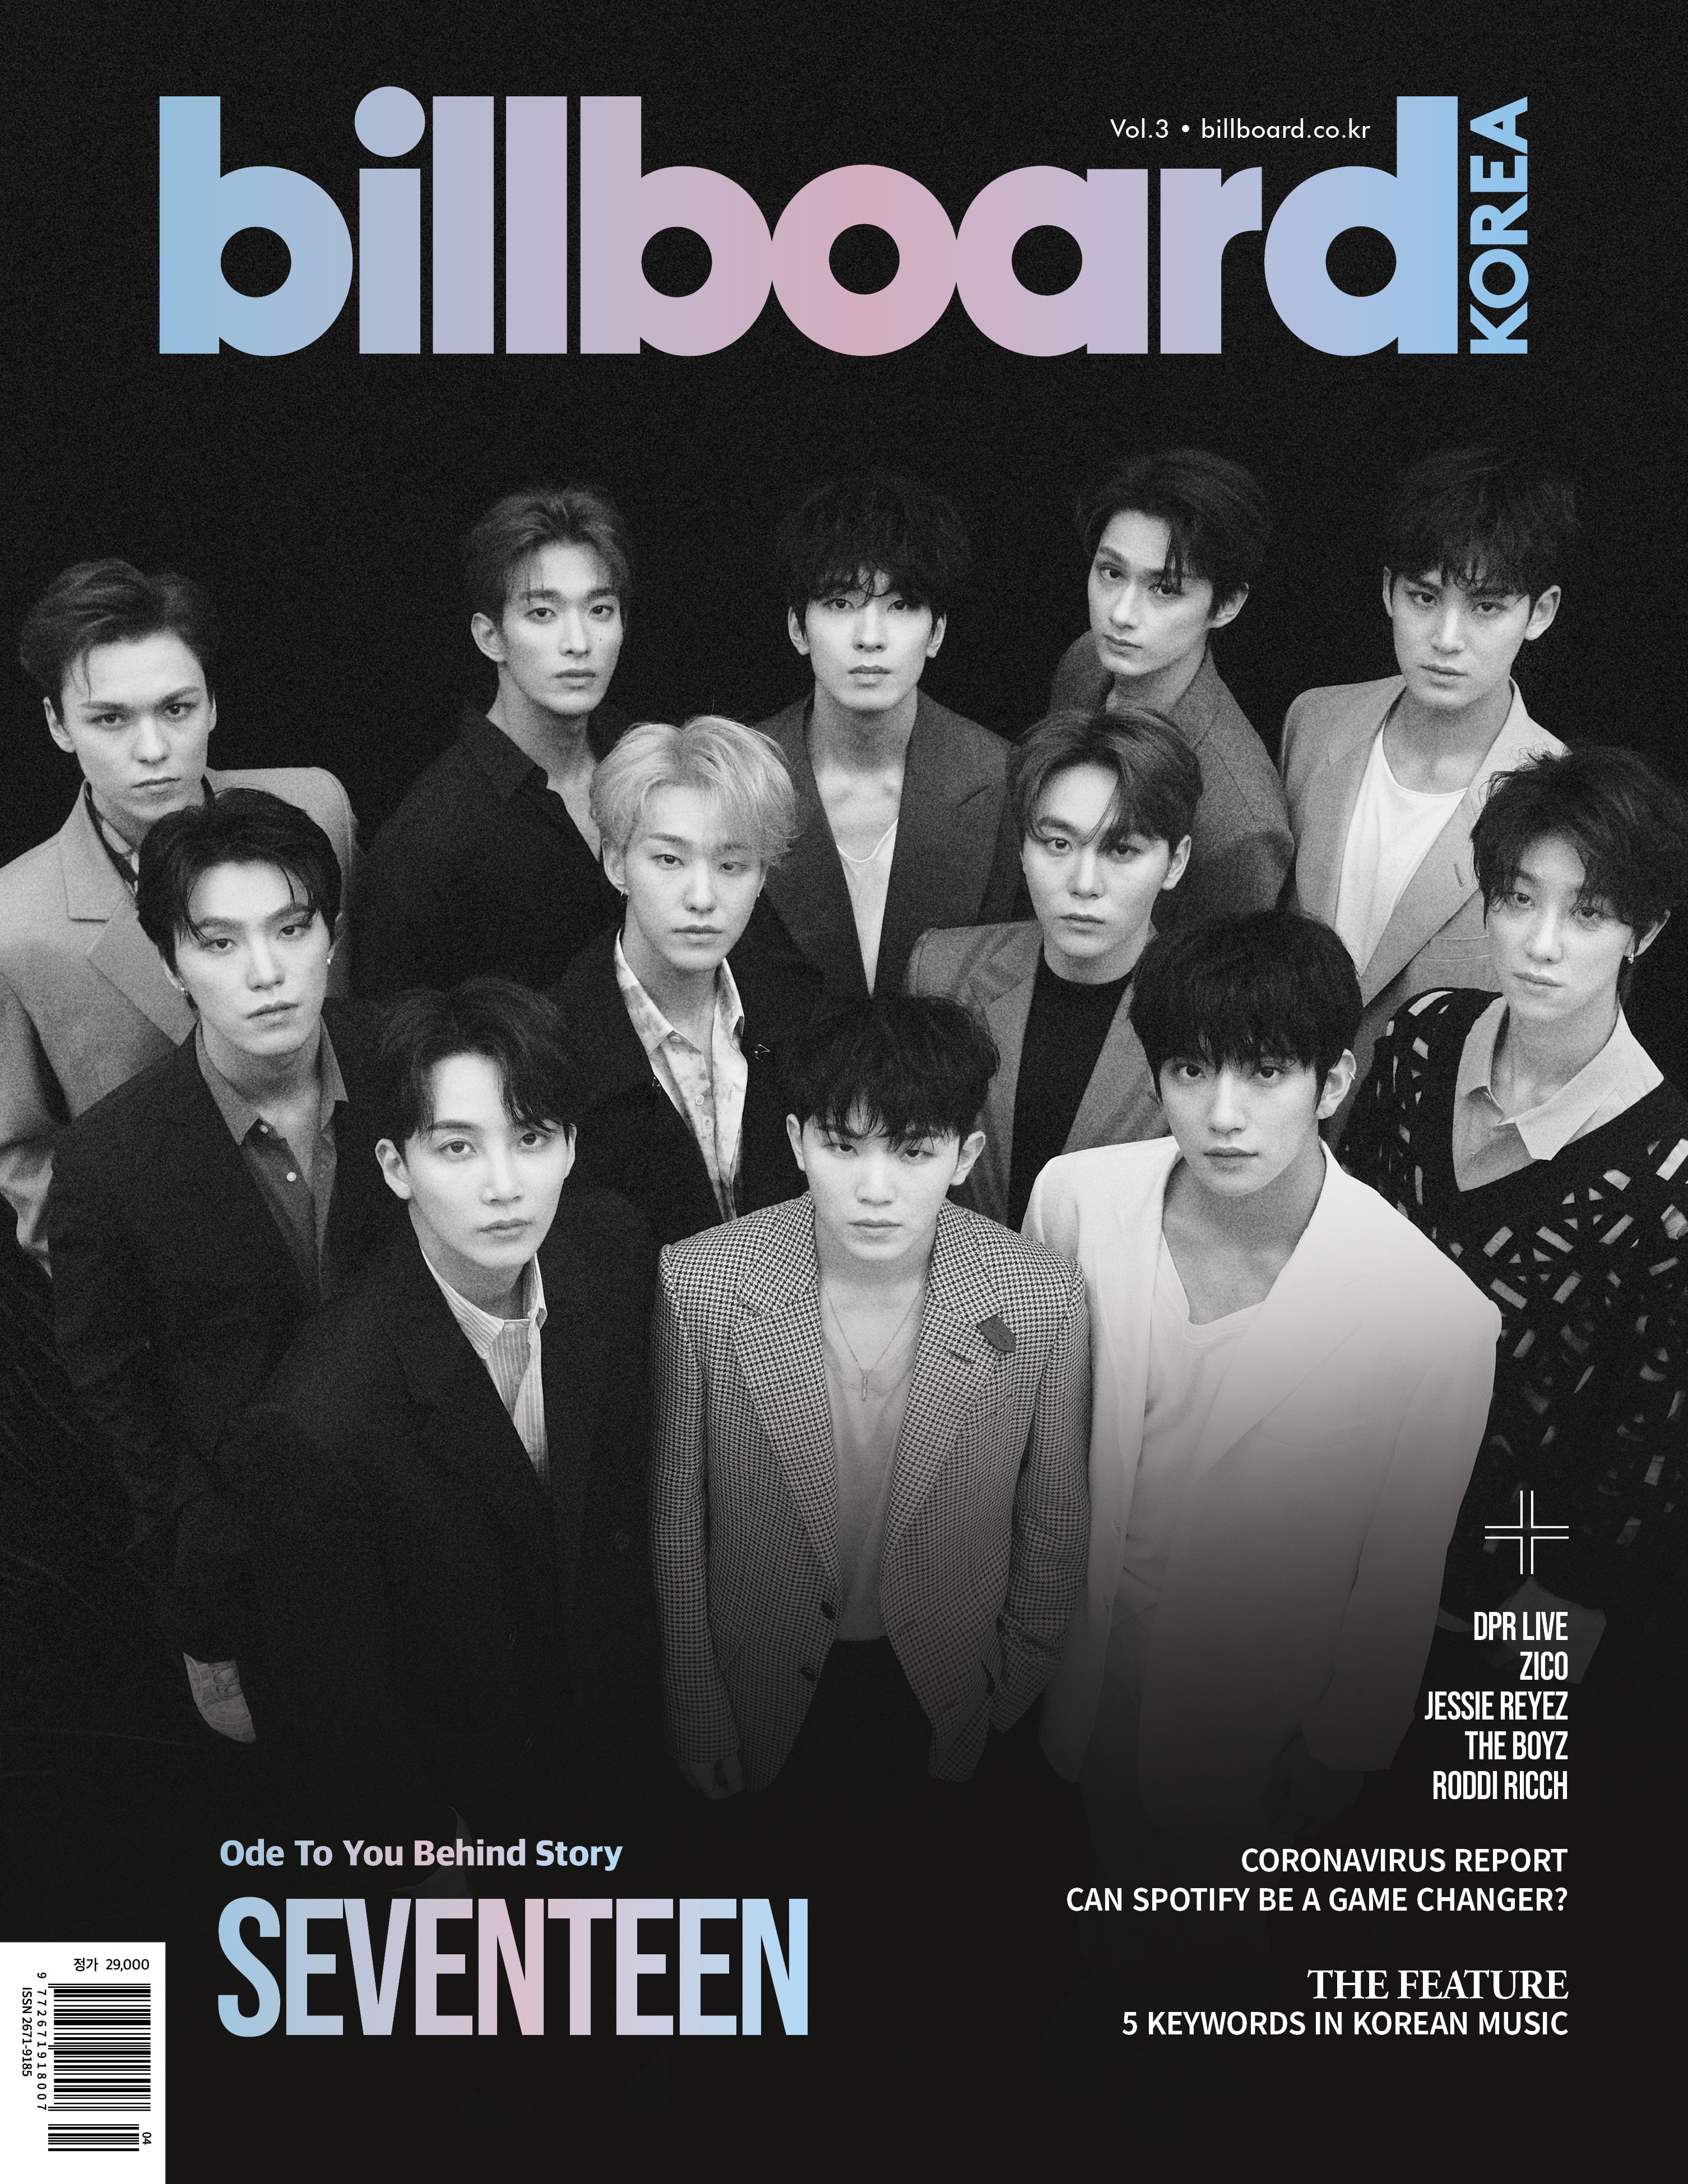 빌보드 코리아 Billboard Korea on Twitter: 